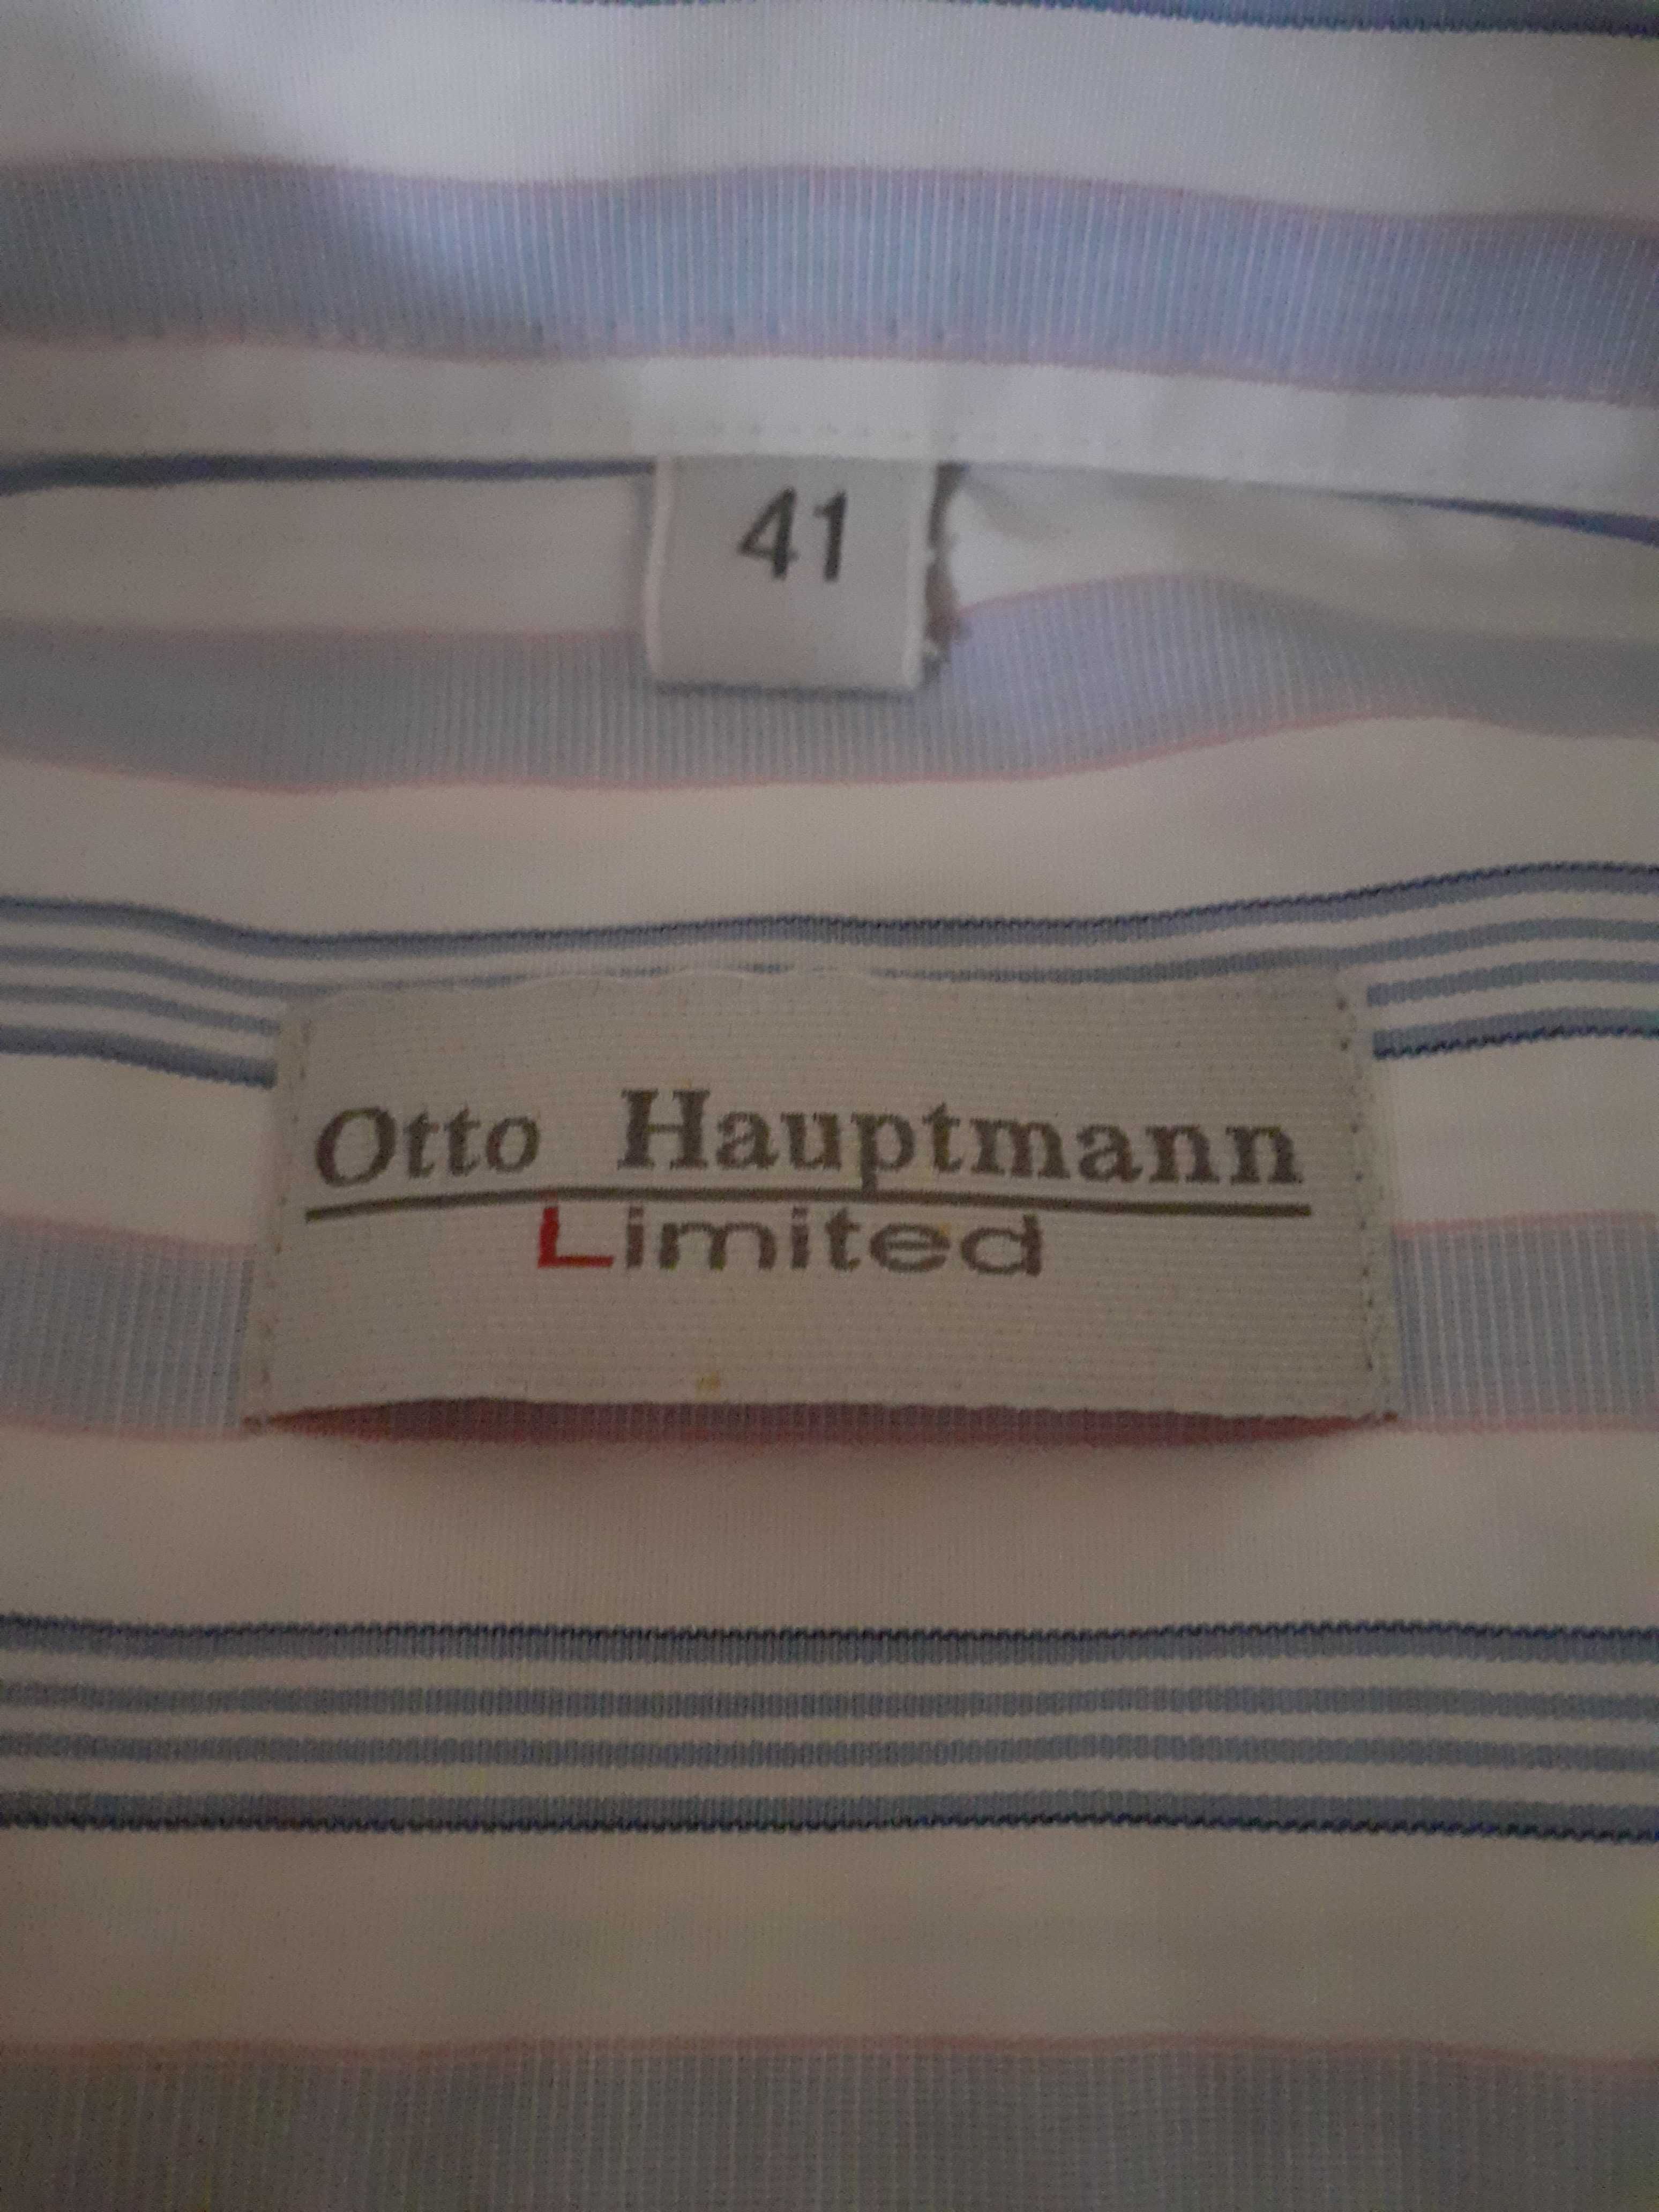 Koszula męska "Otto Hauptmann Limited"